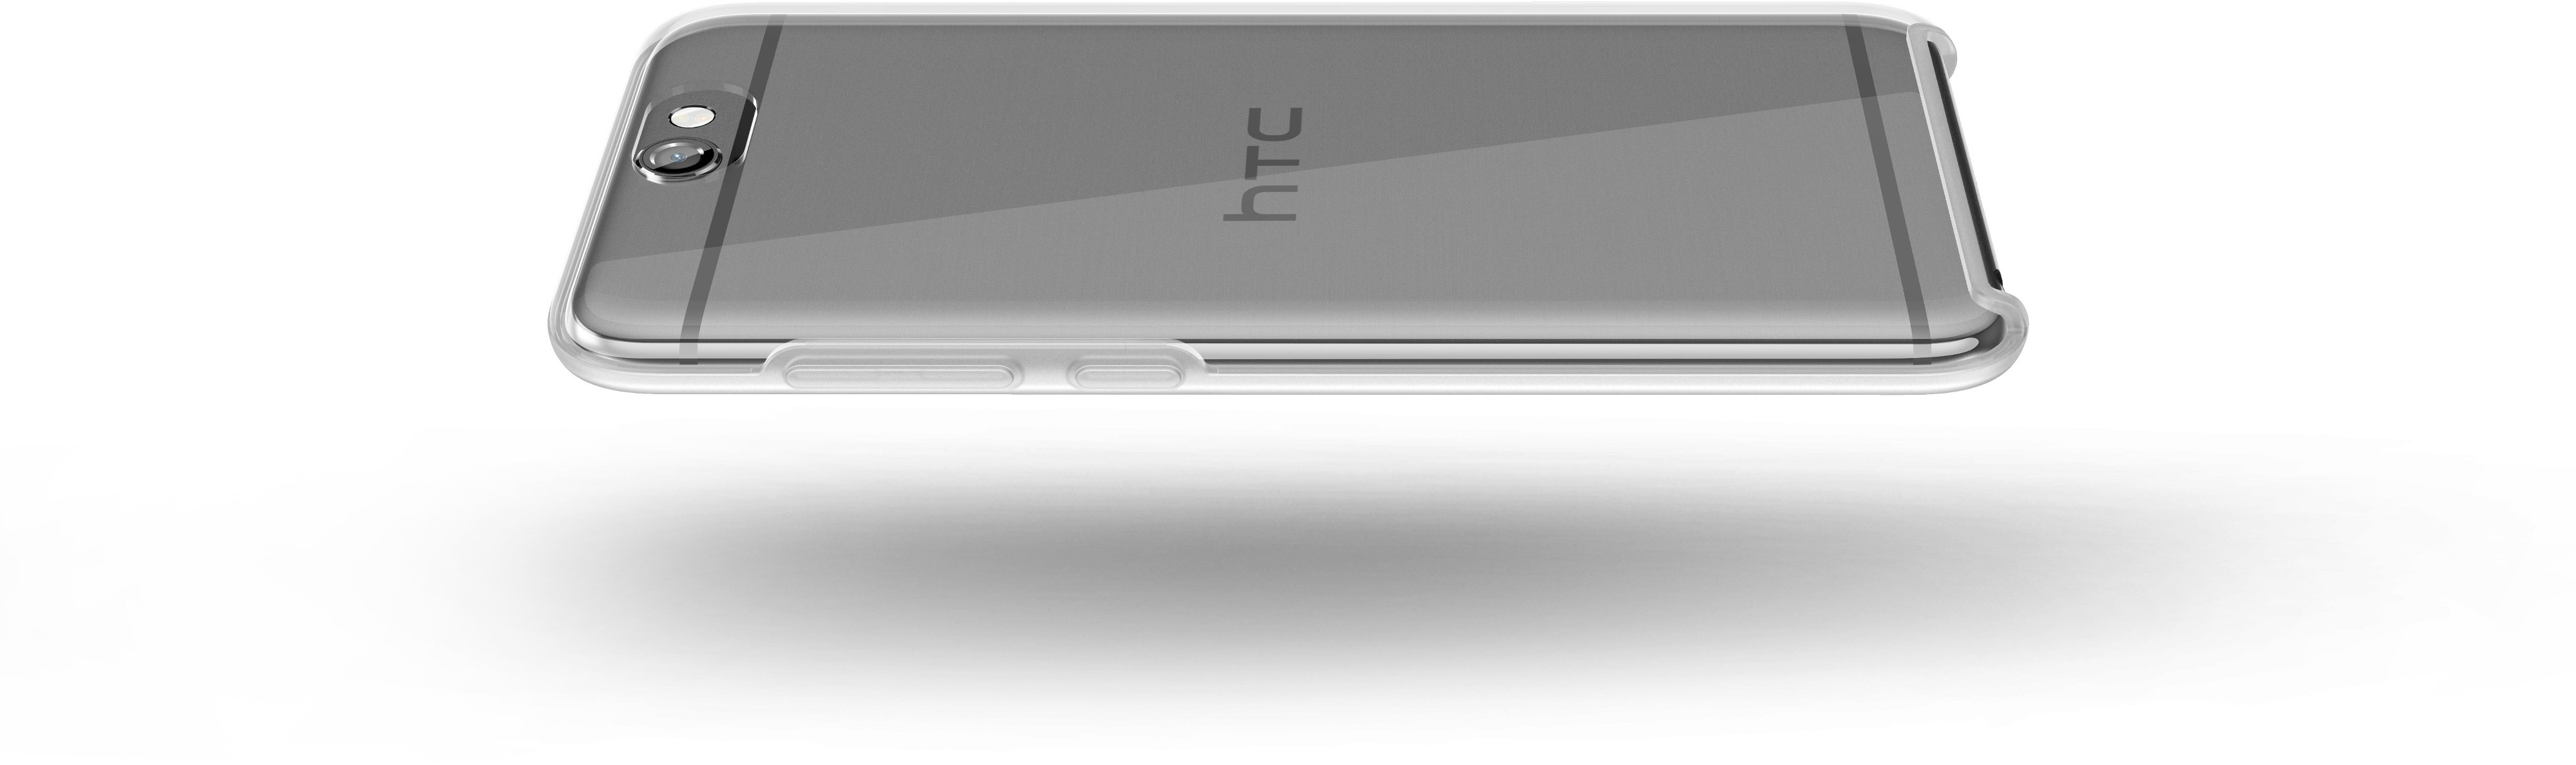 One Transparent A9, HTC HTC, 99H11985-00,